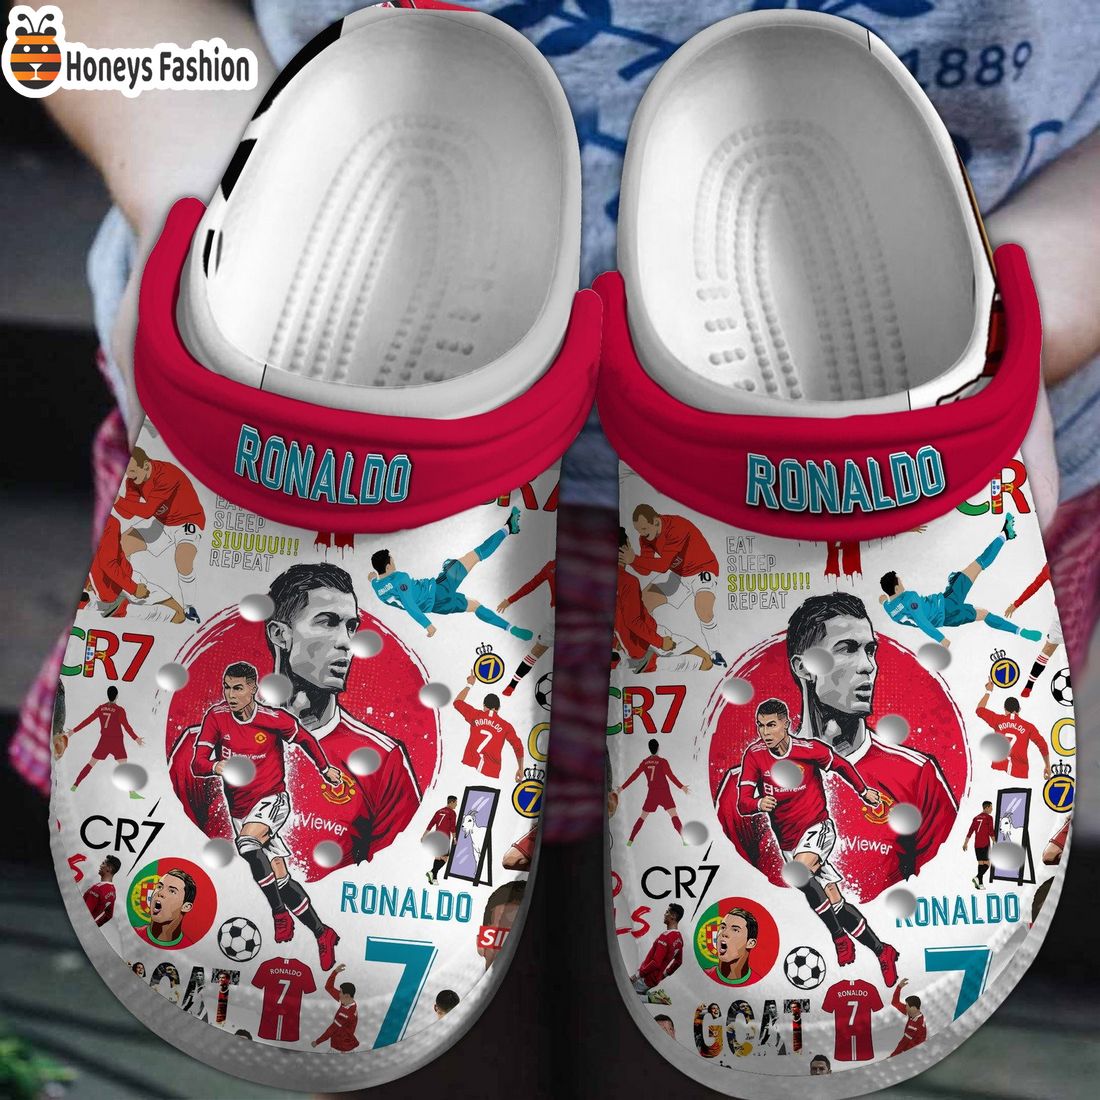 Cristiano Ronaldo CR7 Siuuu Crocs Clogs Shoes